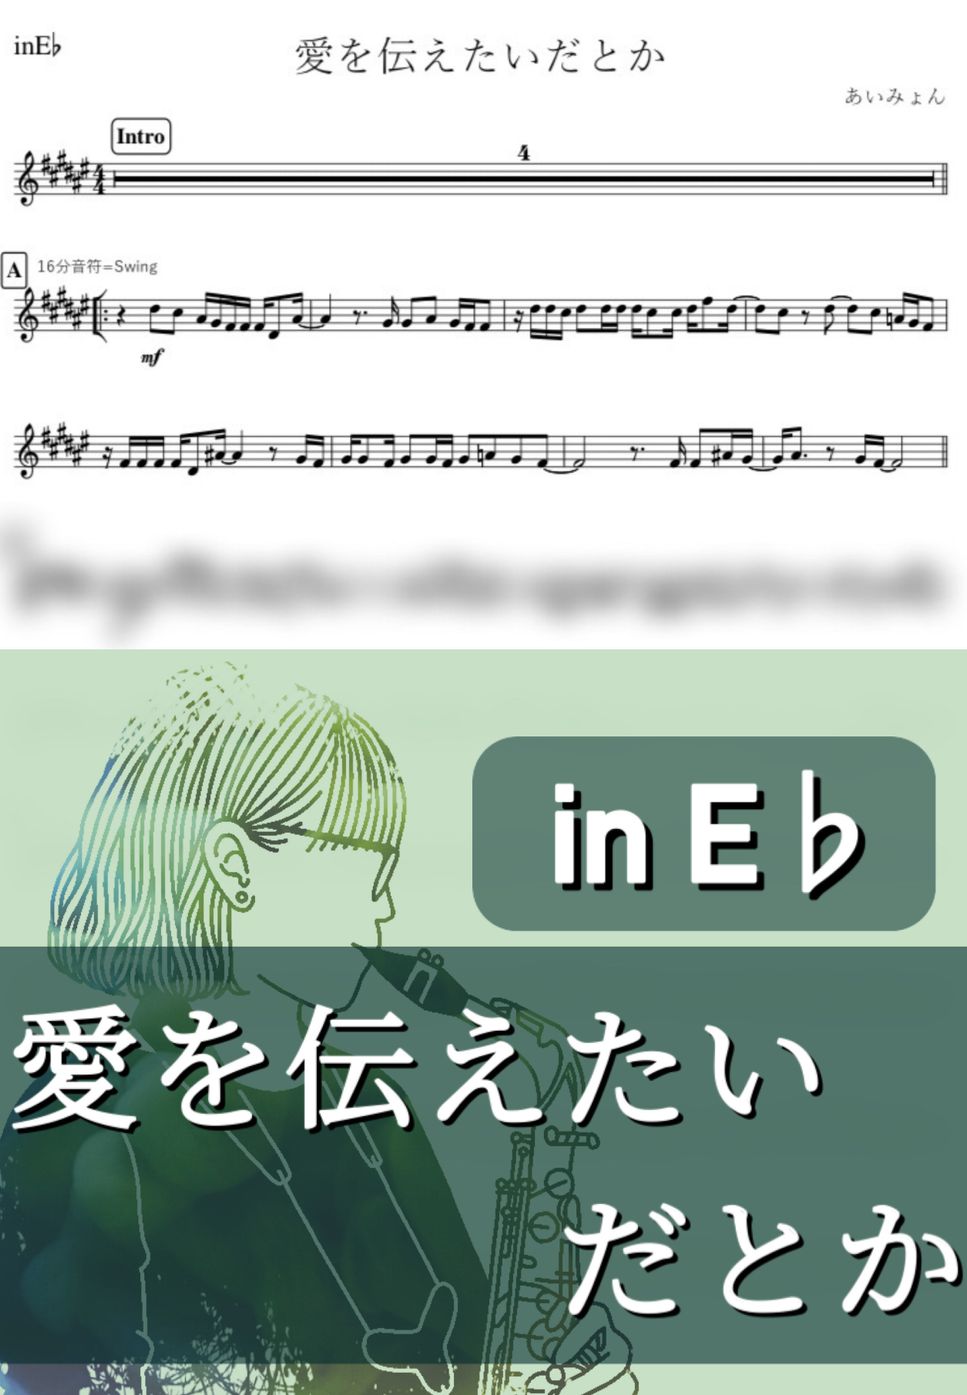 あいみょん - 愛を伝えたいだとか (E♭) by kanamusic